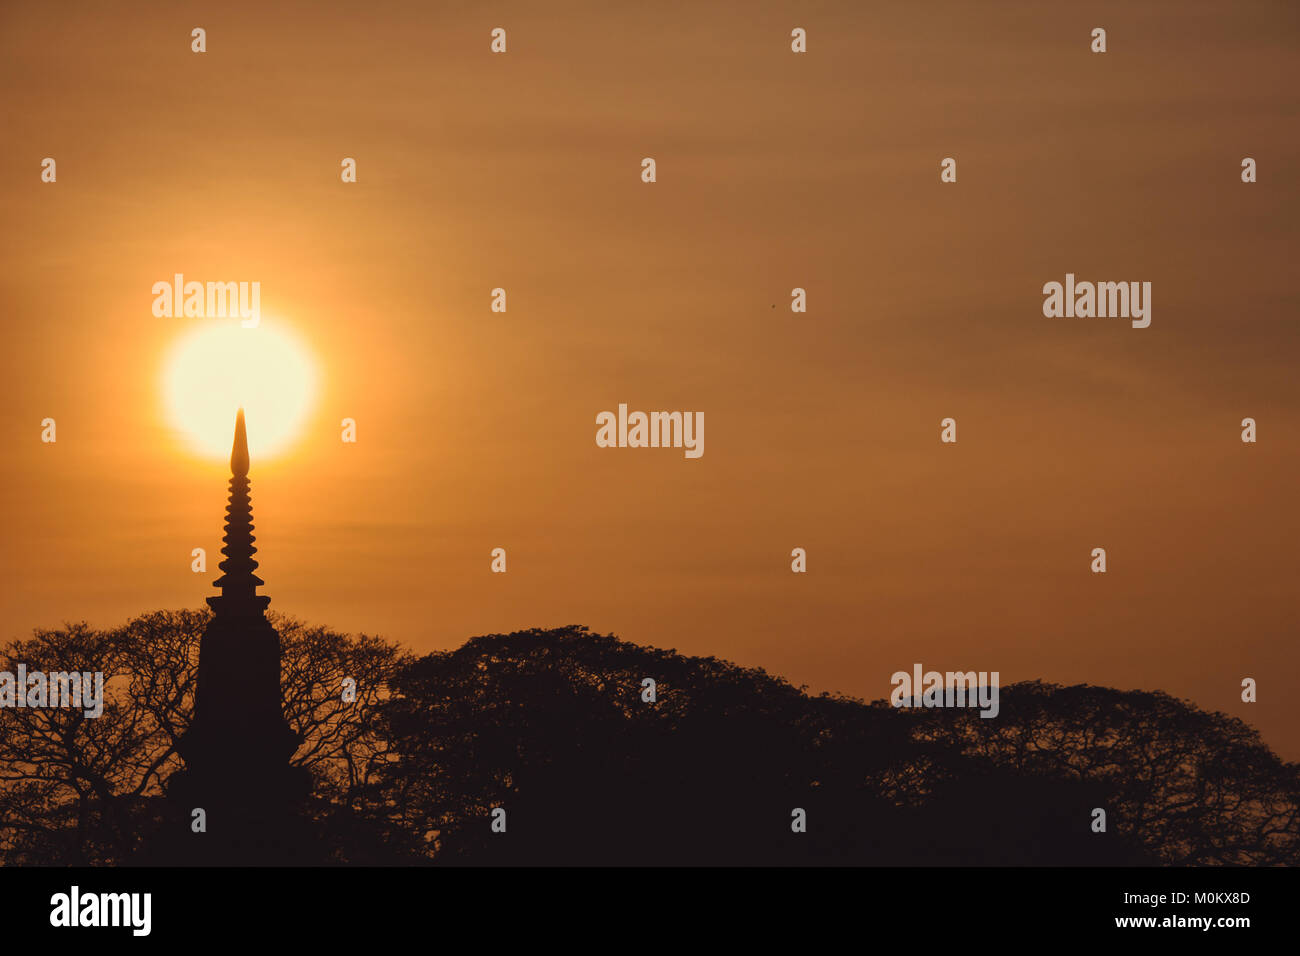 Pagode thaïlandaise silhouette (style ayutthaya) et arbre buisson dans le coucher du soleil, Ayutthaya, Thaïlande. vintage style photographique et cinématographique Banque D'Images